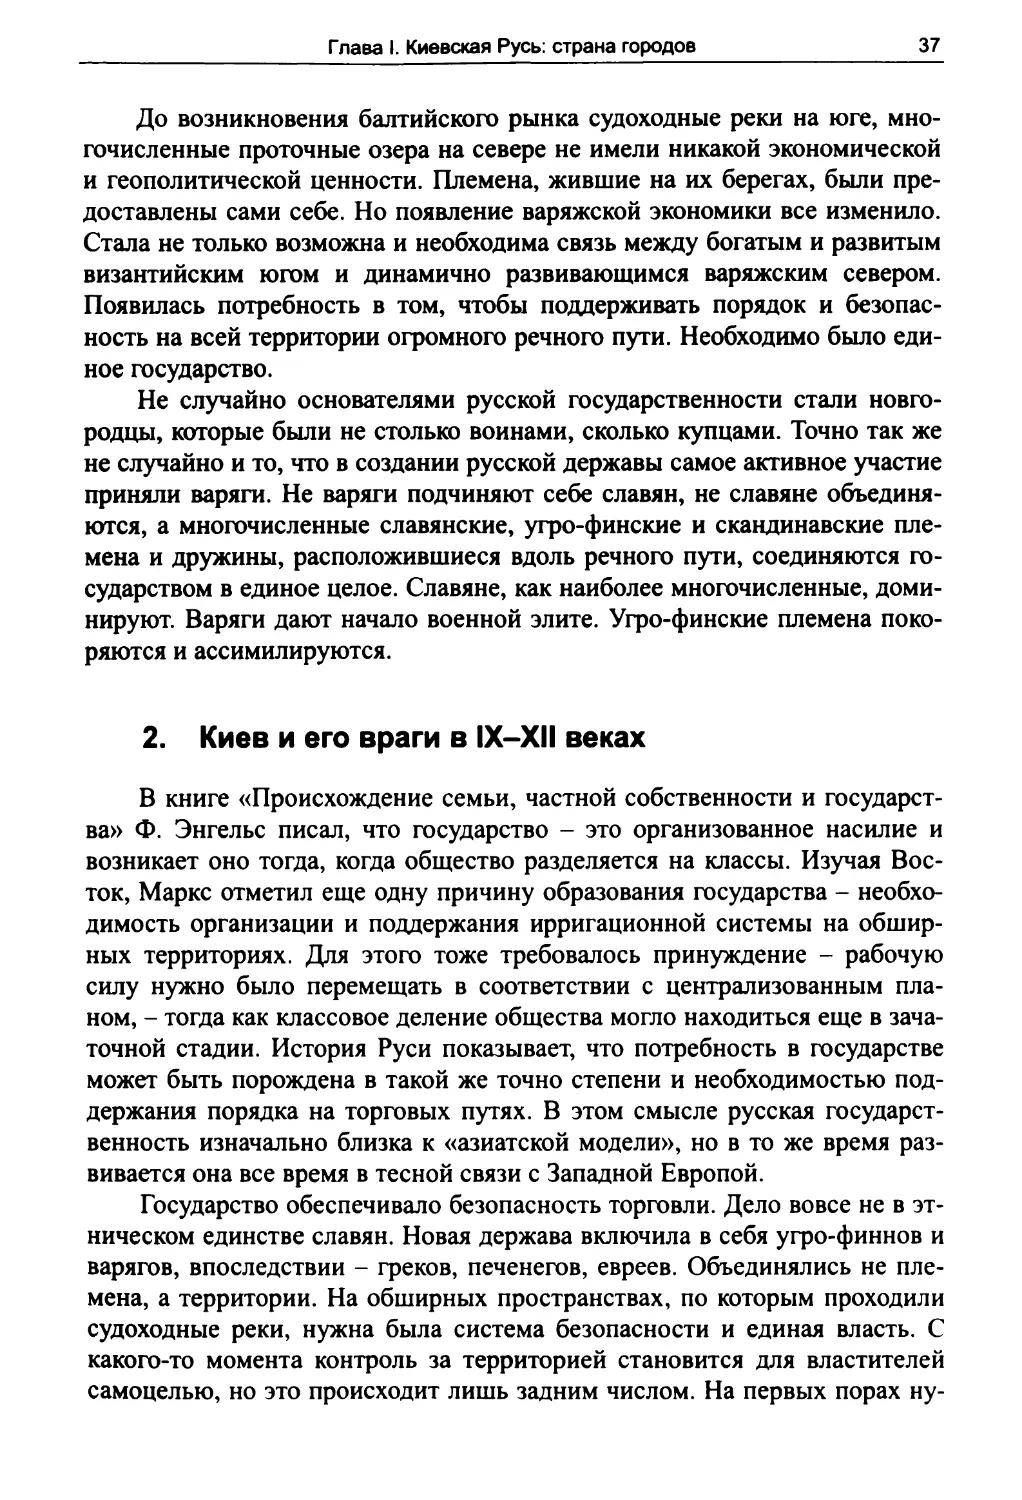 2. Киев и его враги в IX-XII веках